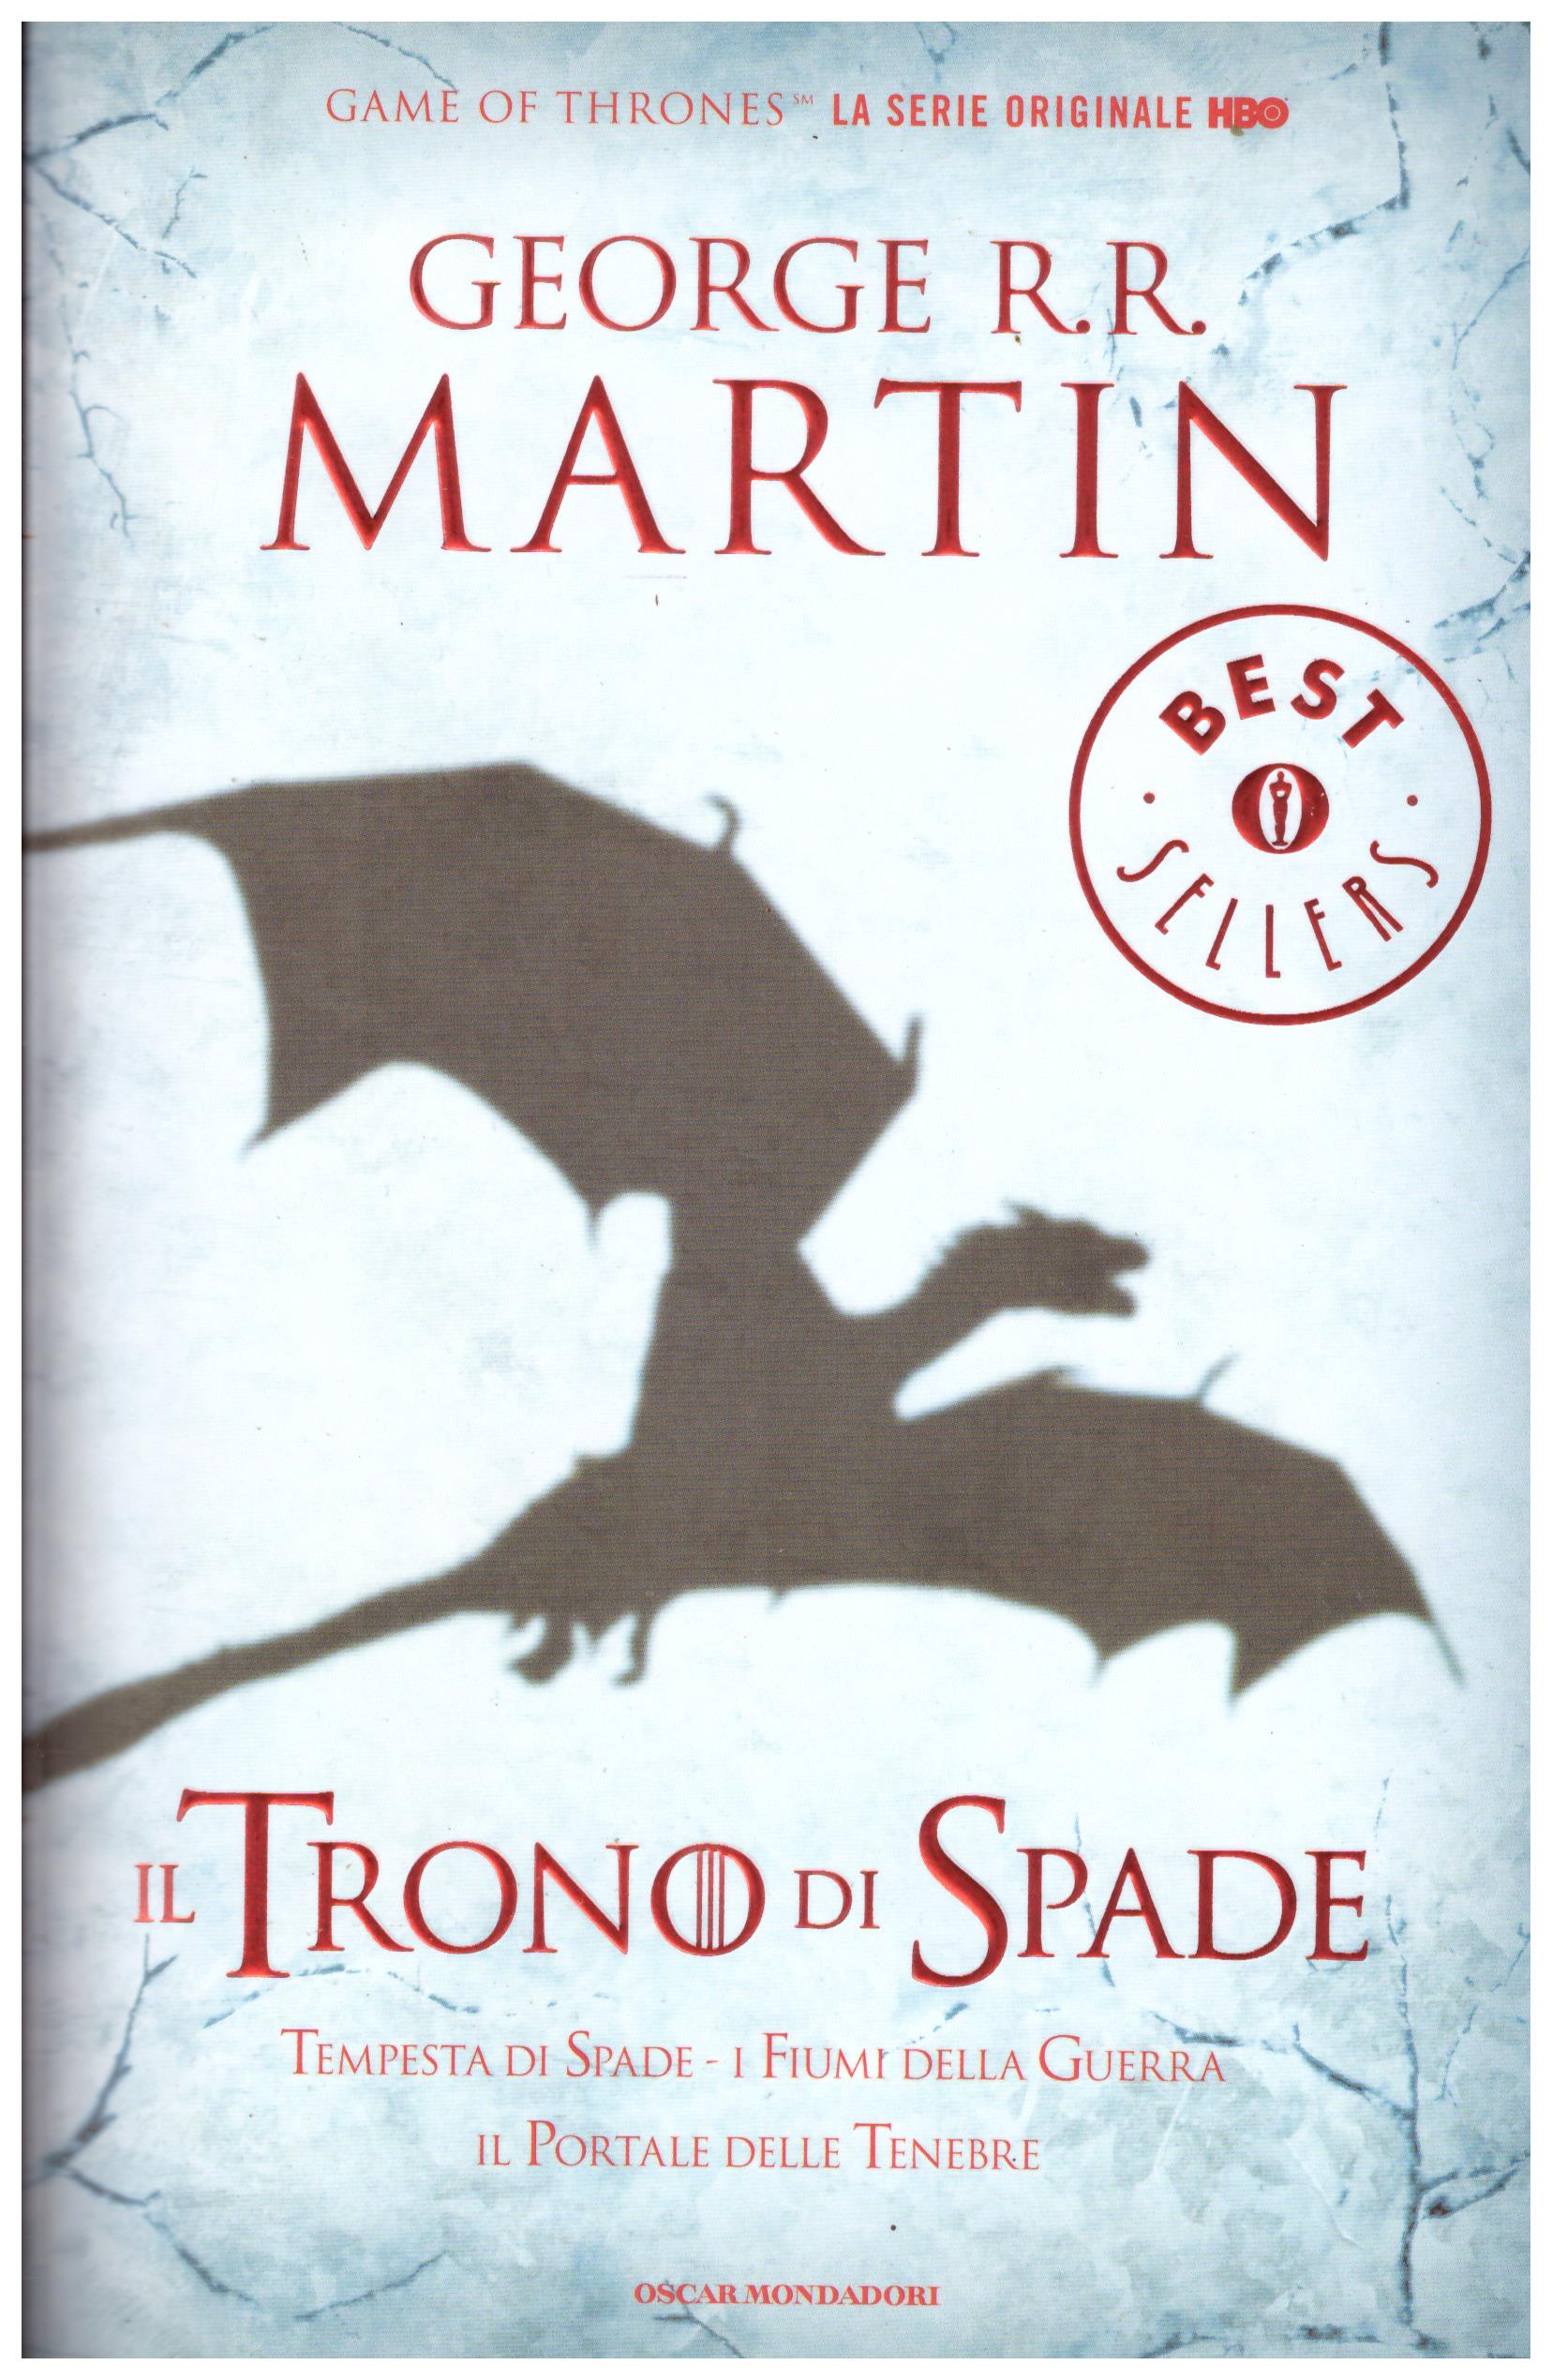 Titolo: Il trono di spade Autore: George R. R. Martin Editore: Mondadori, 2013